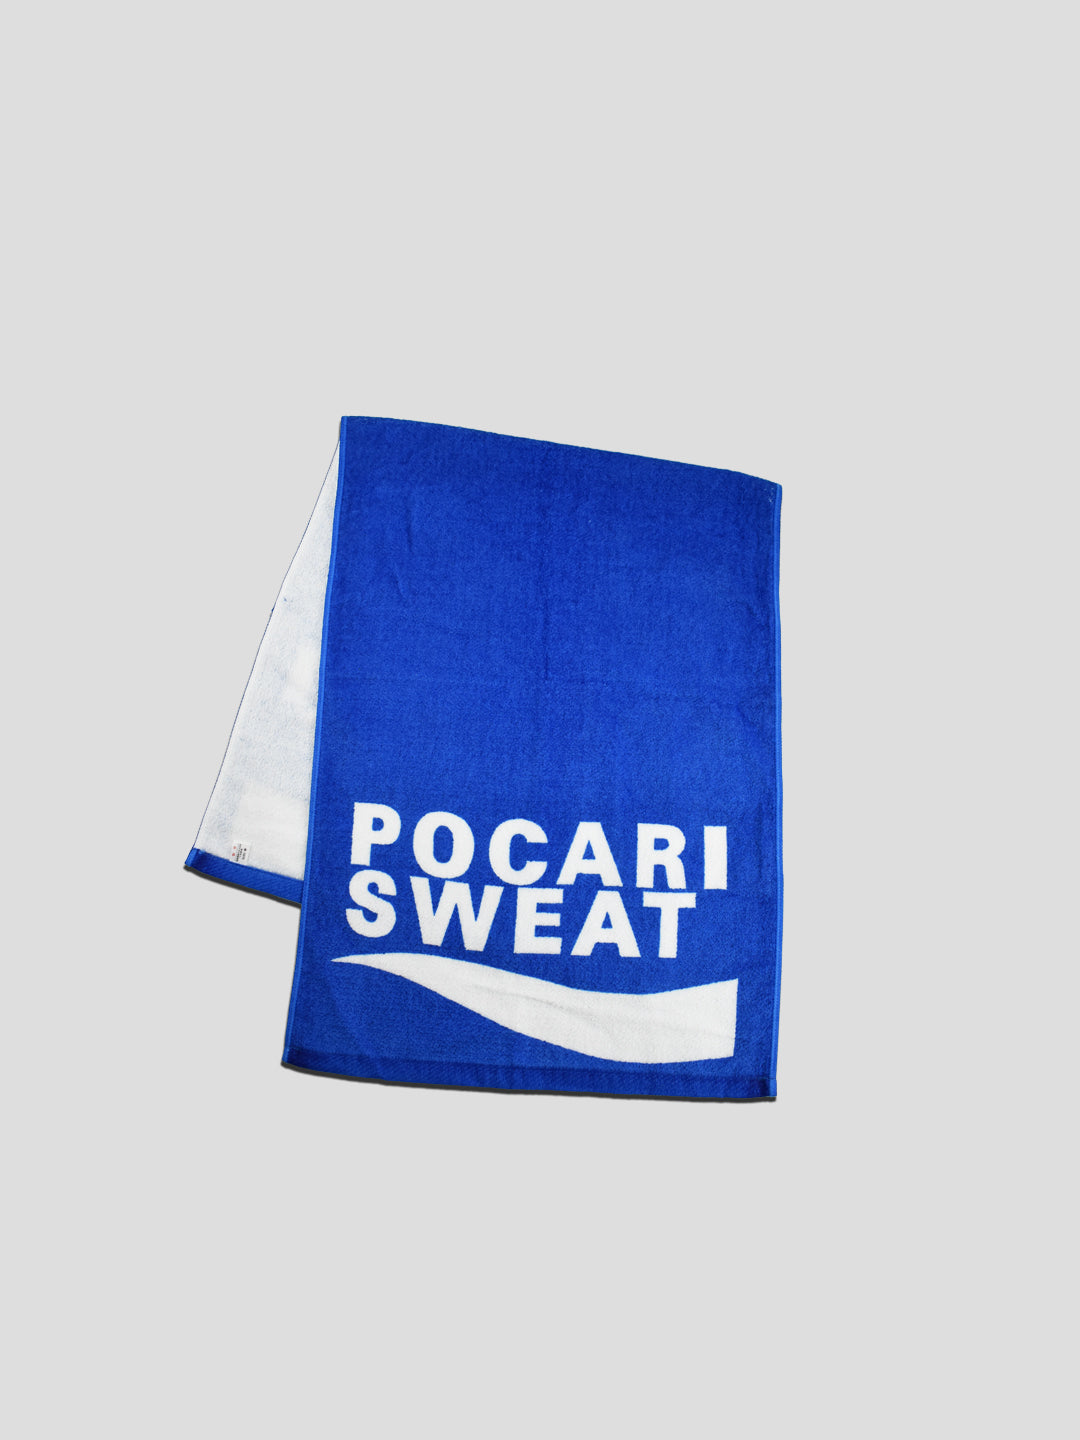 Pocari Sweat Towel